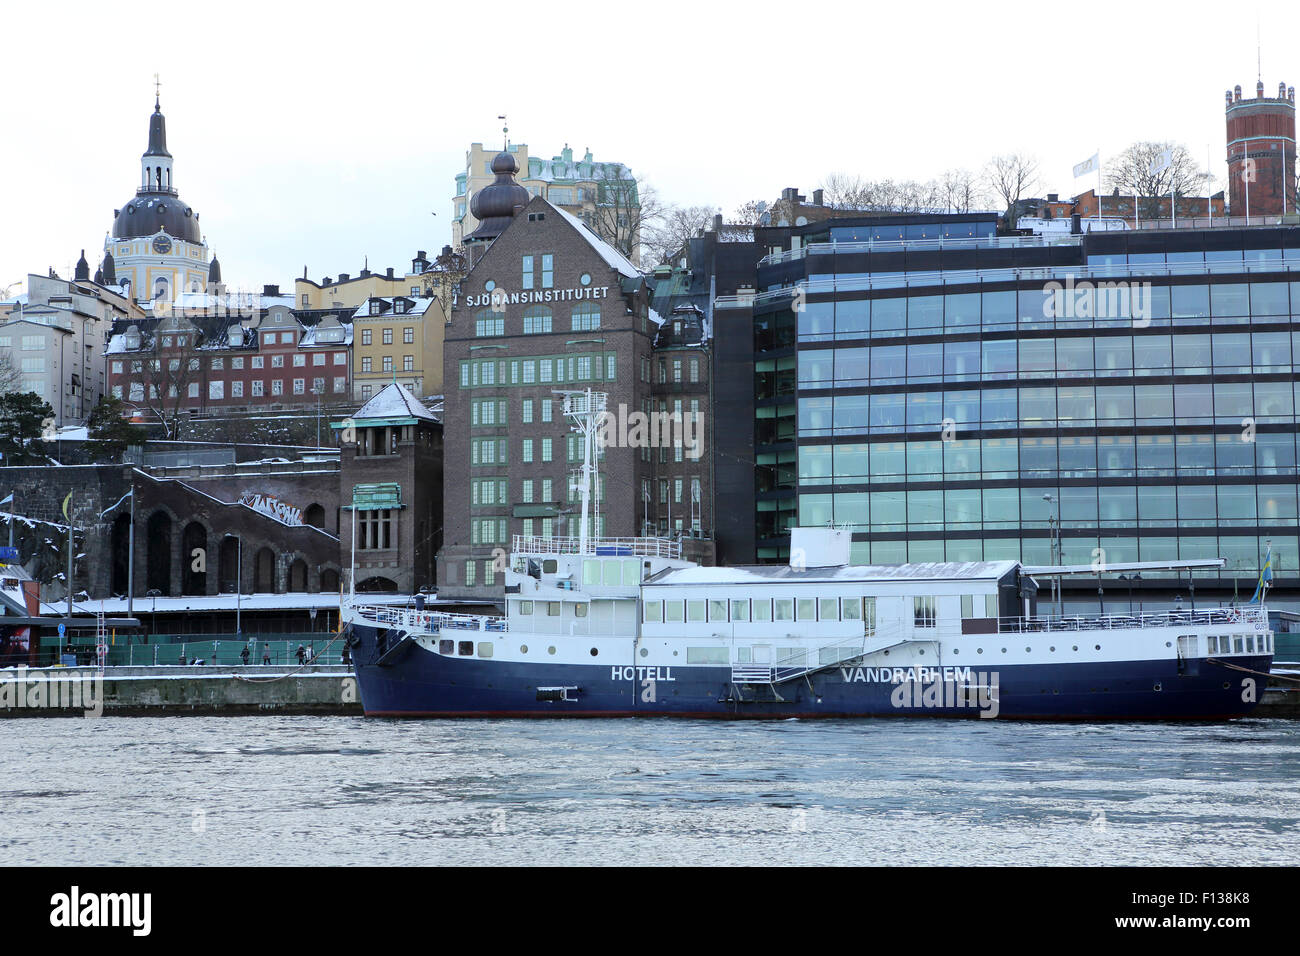 L'Hotell Vandrarhem à Stockholm, en Suède. Le navire est un hôtel flottant. Banque D'Images